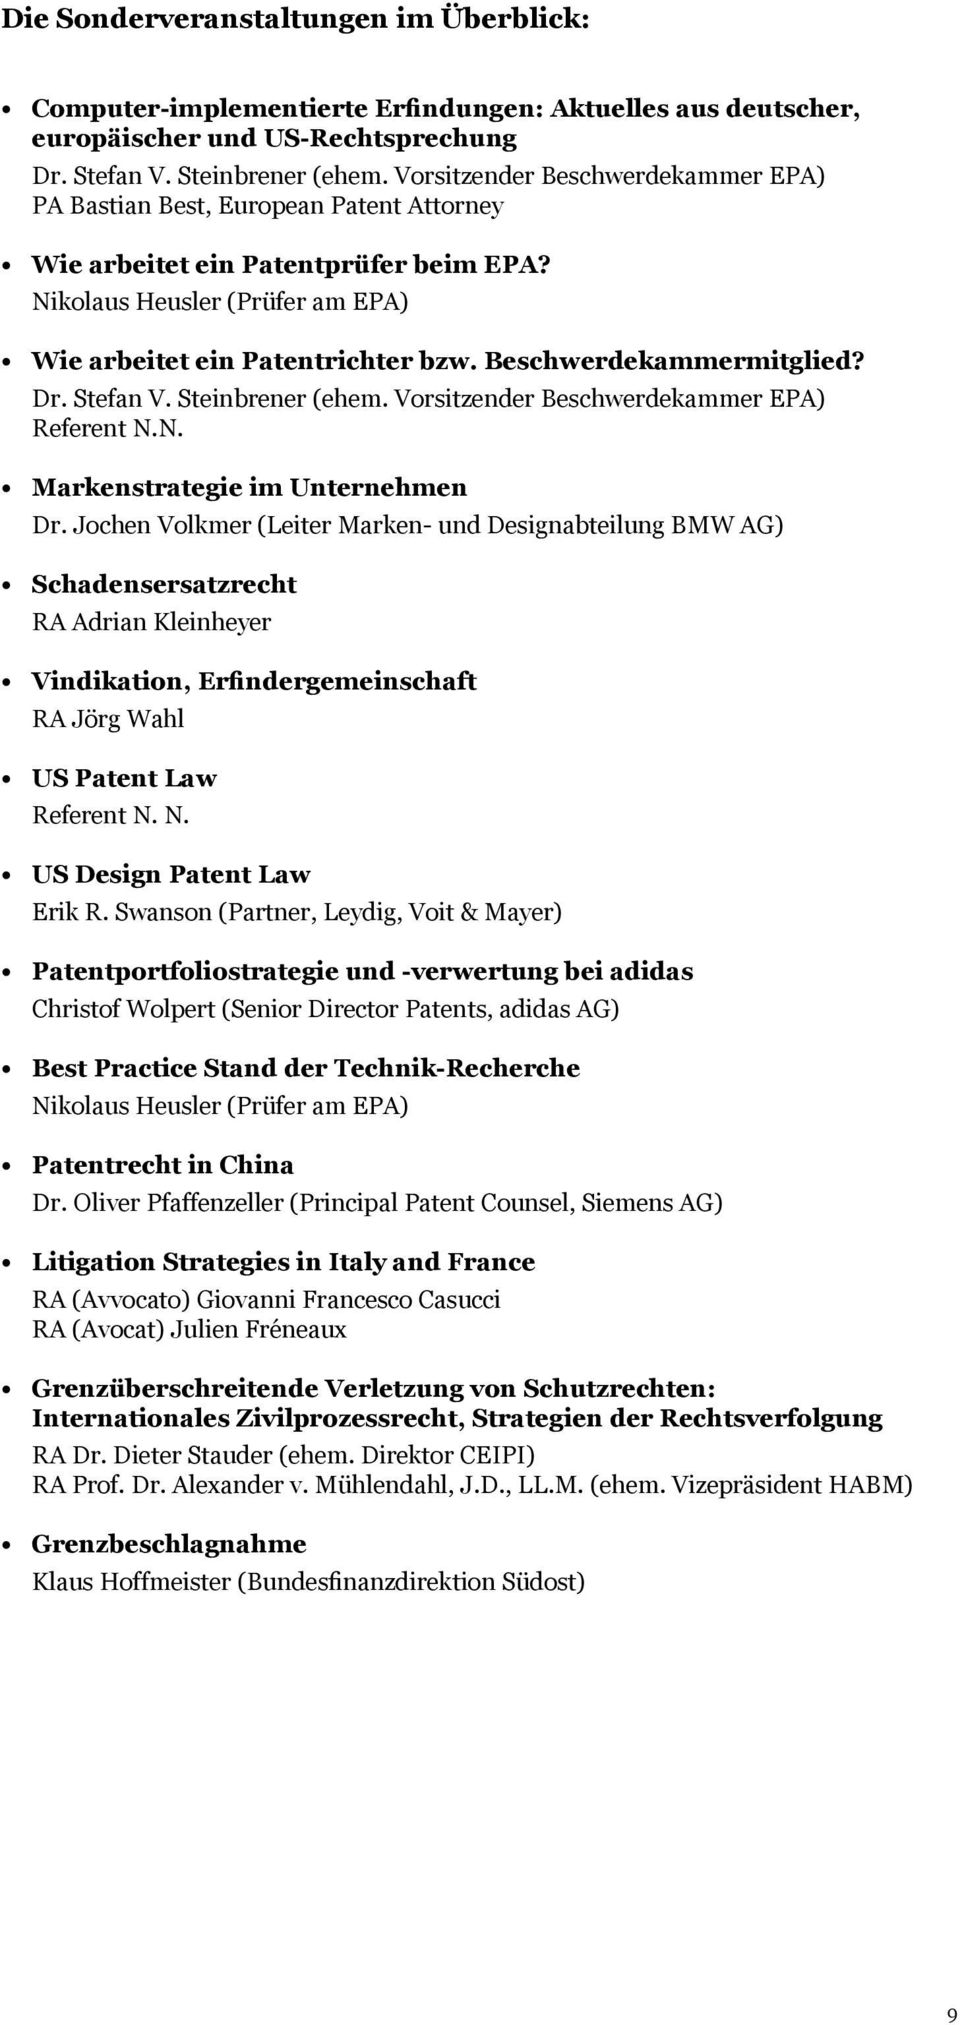 Jochen Volkmer (Leiter Marken- und Designabteilung BMW AG) Schadensersatzrecht RA Adrian Kleinheyer Vindikation, Erfindergemeinschaft RA Jörg Wahl US Patent Law Referent N.